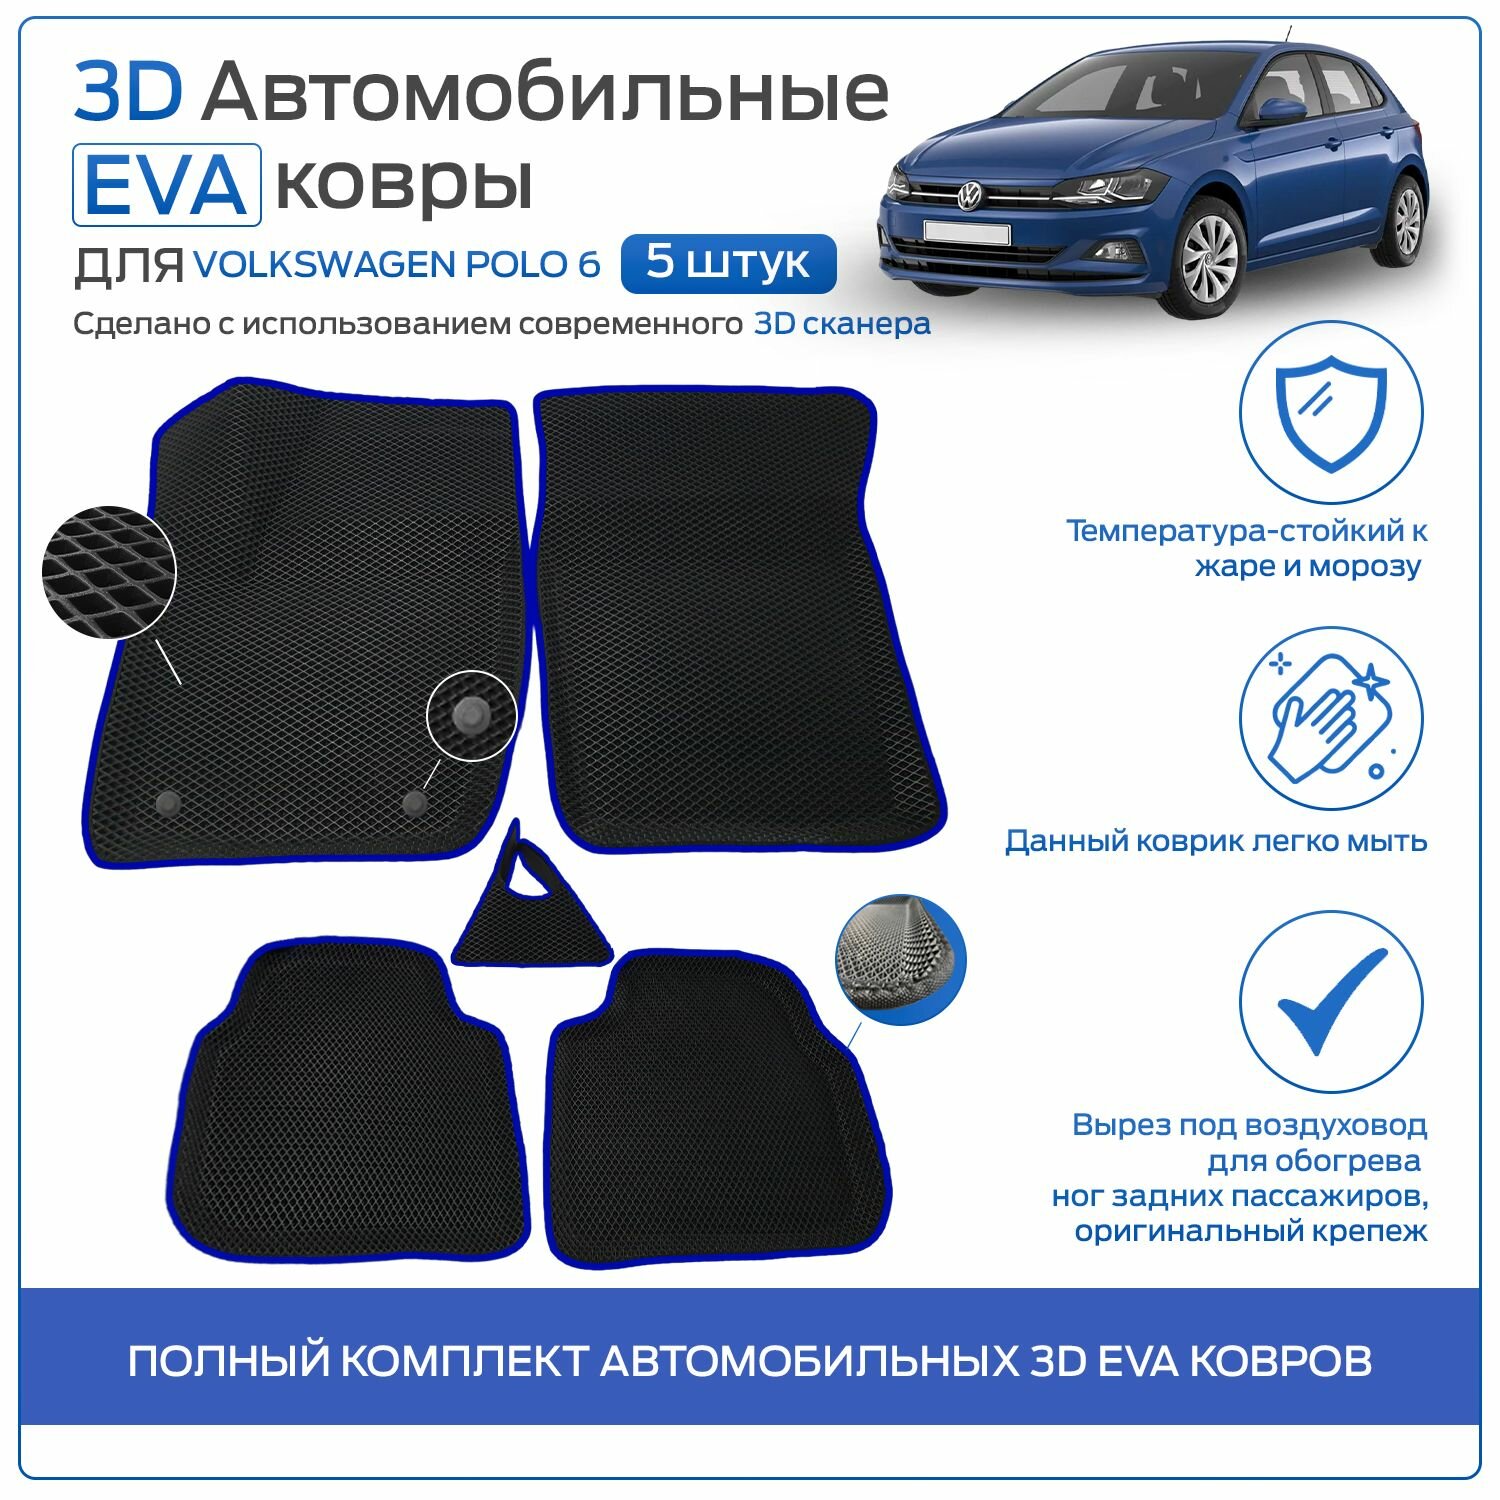 Пресс-EVA 3Д Ковры Volkswagen Polo 6 (Ева, эва, коврики с бортами) Фольксваген Поло 6 / Синие